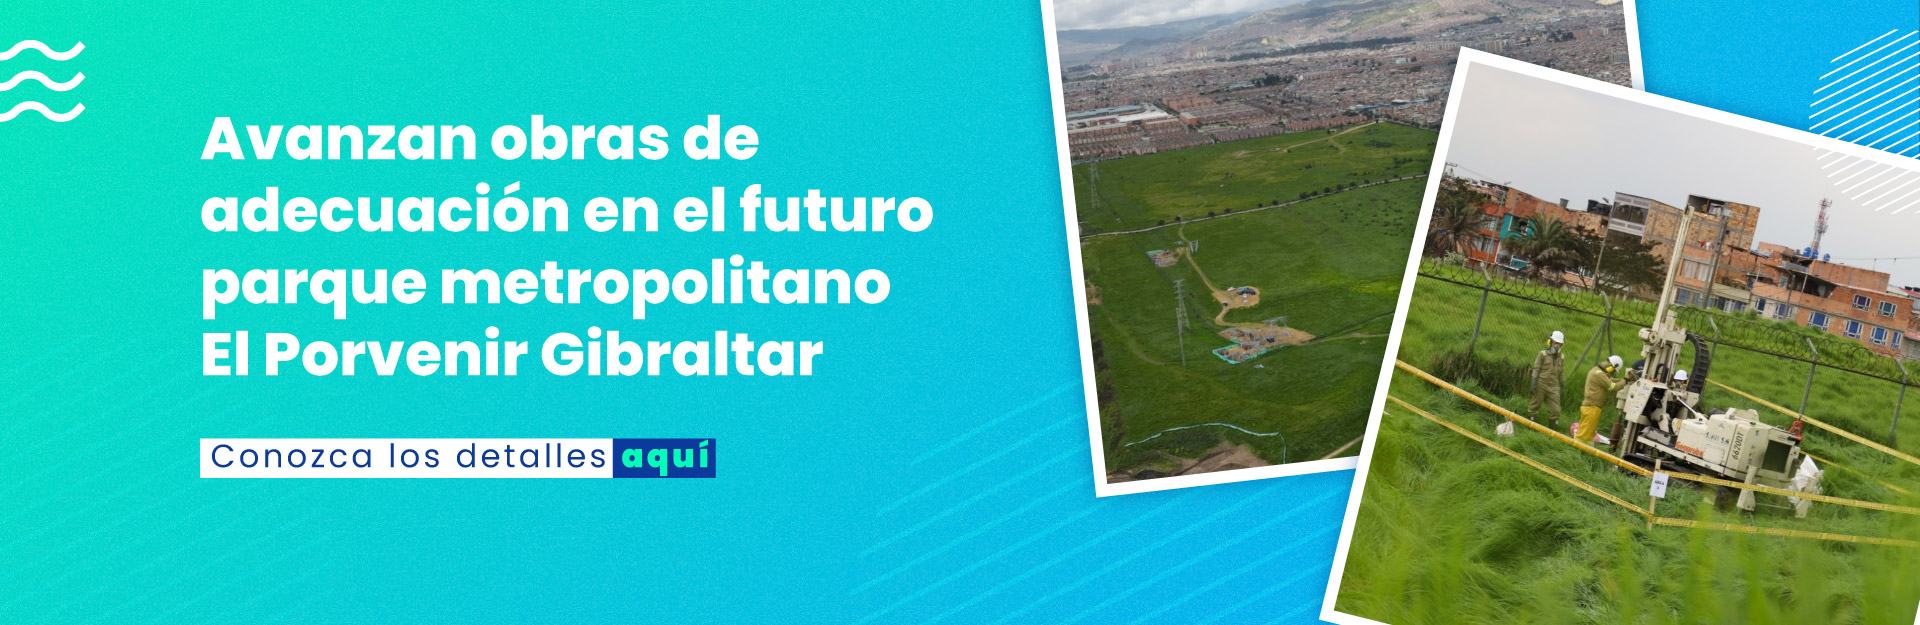 Avanzan obras para adecuación del futuro parque metropolitano El Porvenir Gibraltar